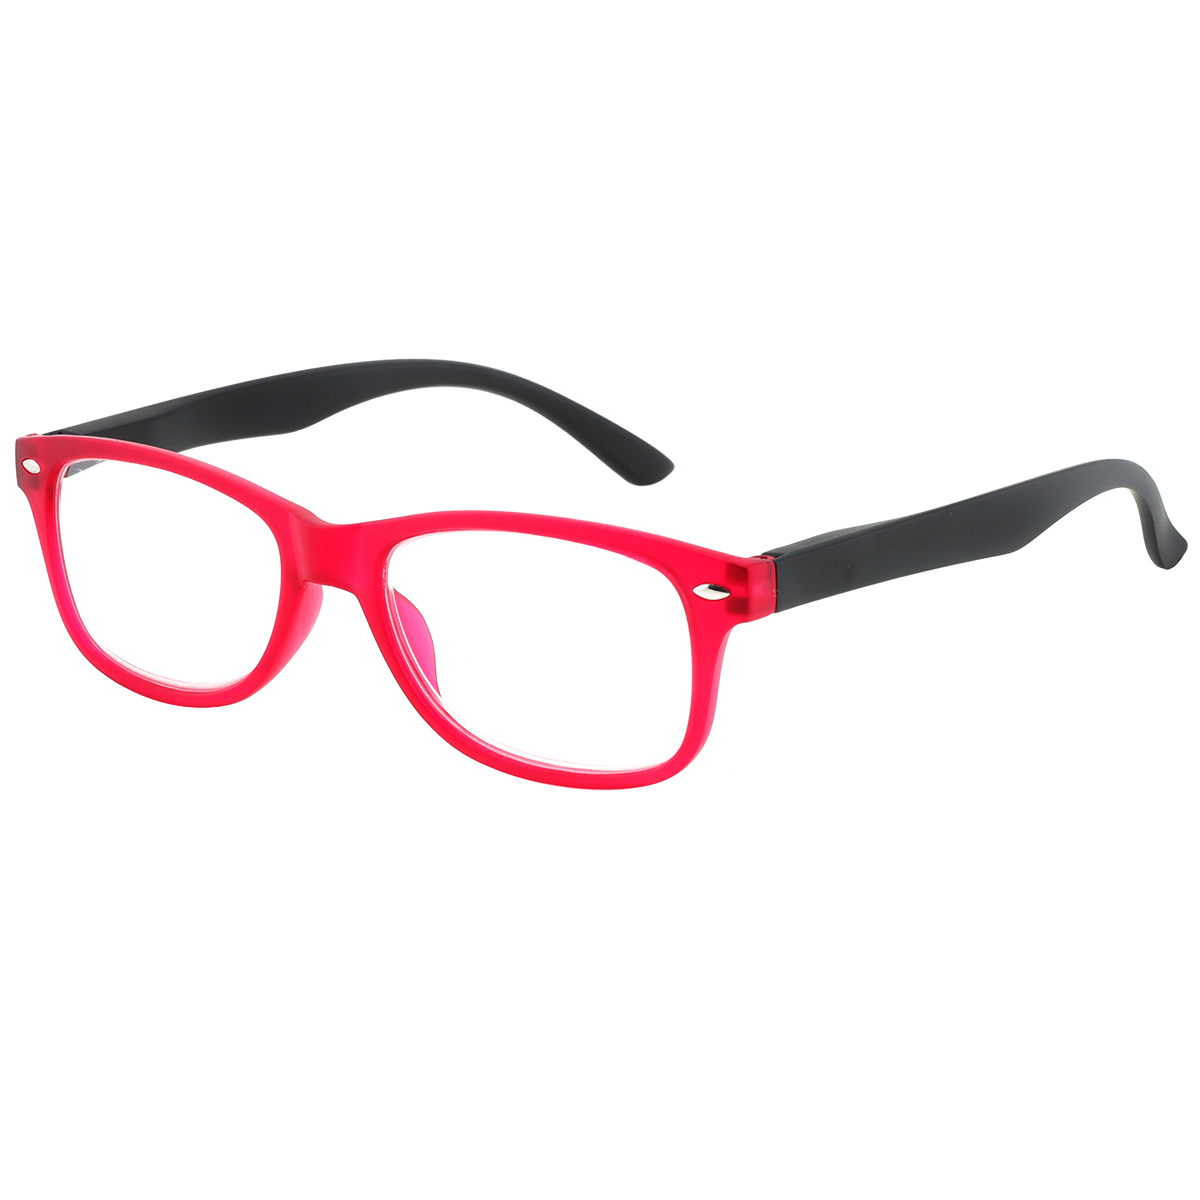 Lege - Rectangle Red Reading Glasses for Men & Women